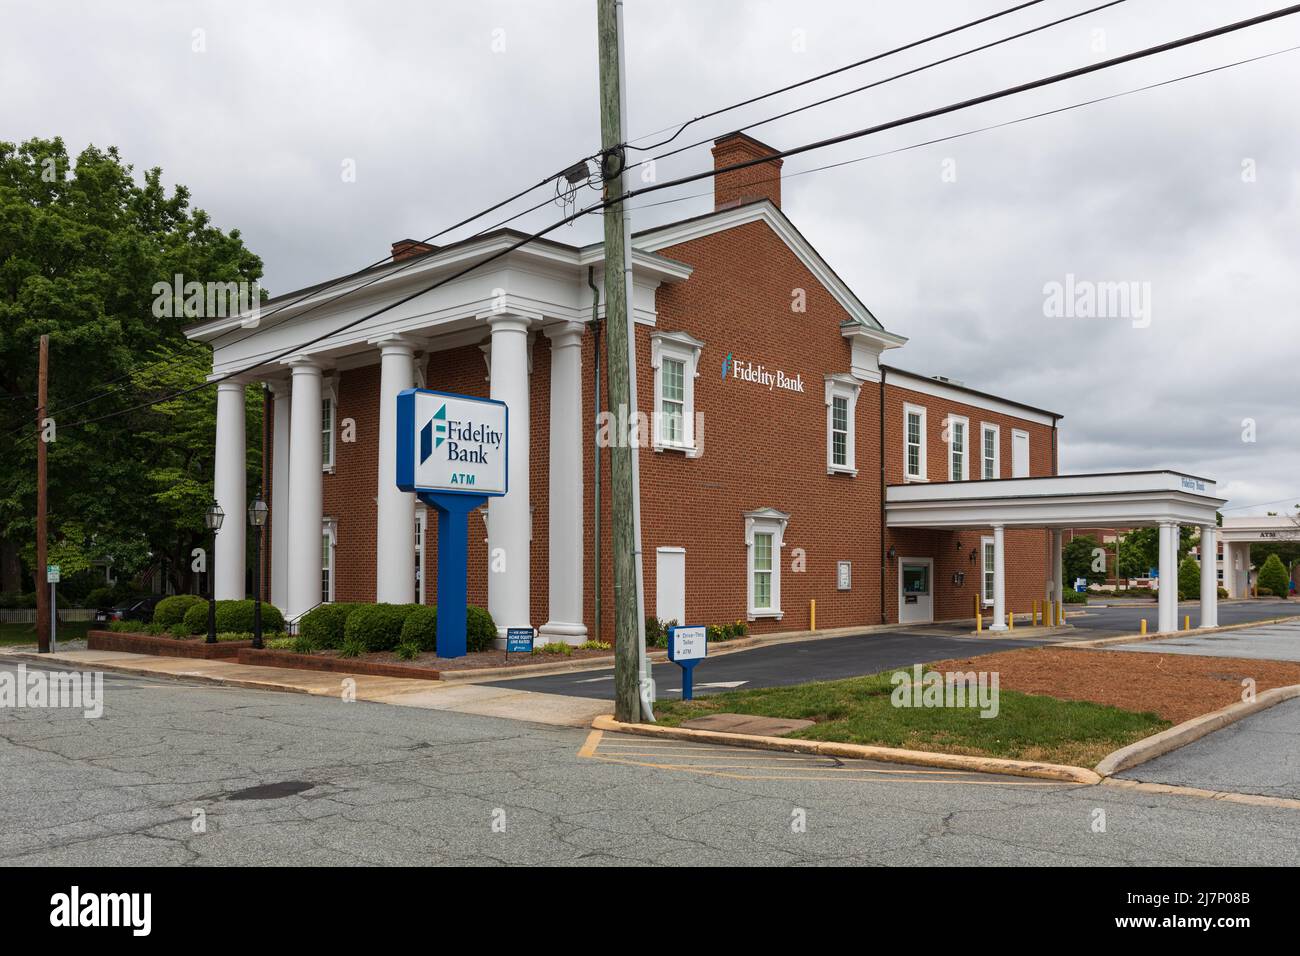 LEXINGTON, Caroline du Nord, USA-8 MAI 2022 : Fidelity Bank, affichage du bâtiment et du drive-in. Banque D'Images